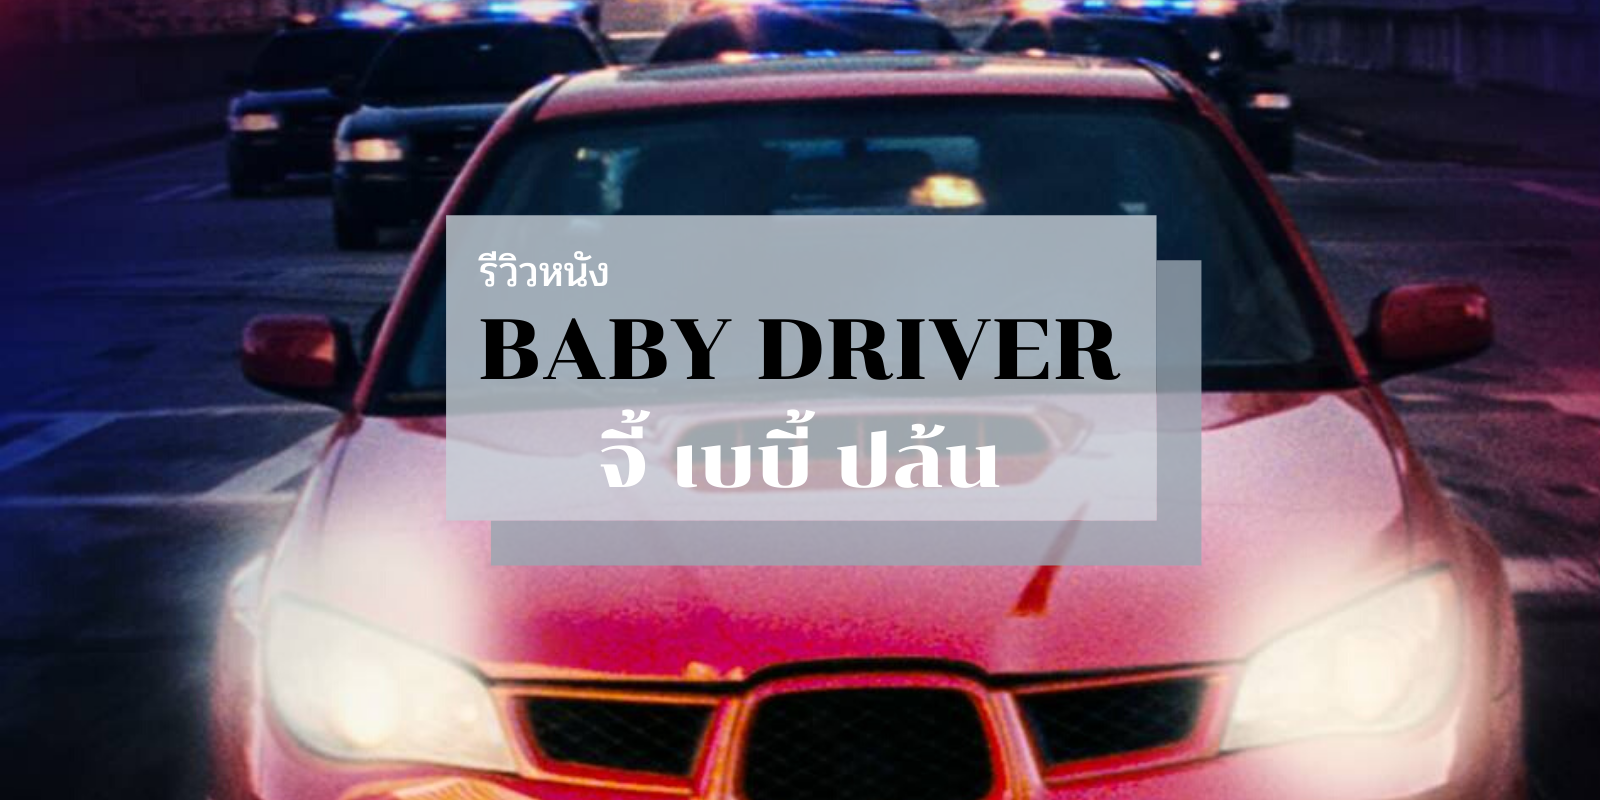 Baby Driver (2017) จี้ เบบี้ ปล้น